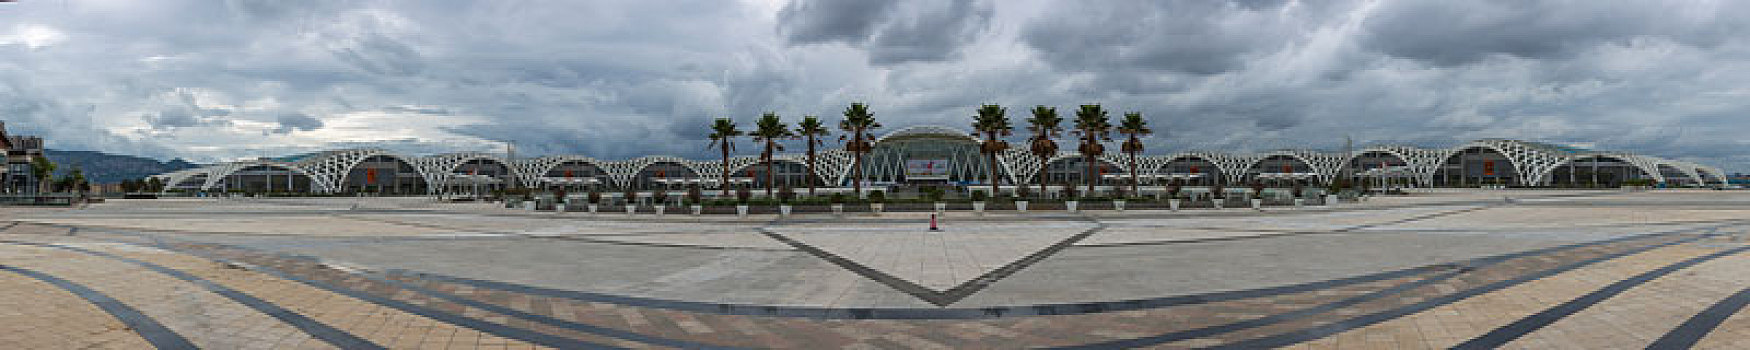 滇池国际会展中心